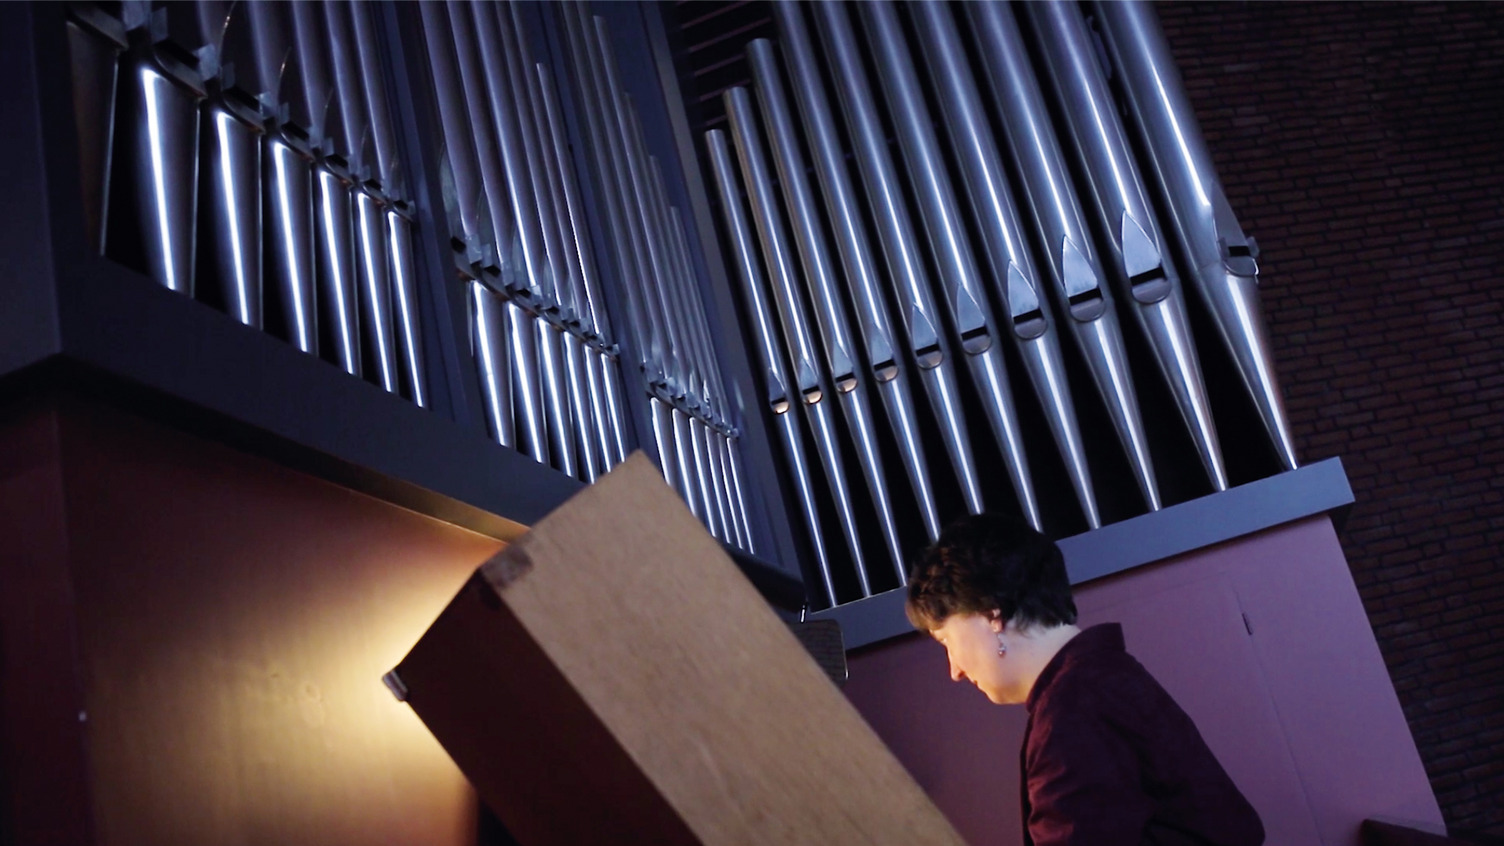 Kirchenmusikerin Ricarda Och spielt auf einer Orgel. Die Szene ist in stimmungsvoll ausgeleuchtet.